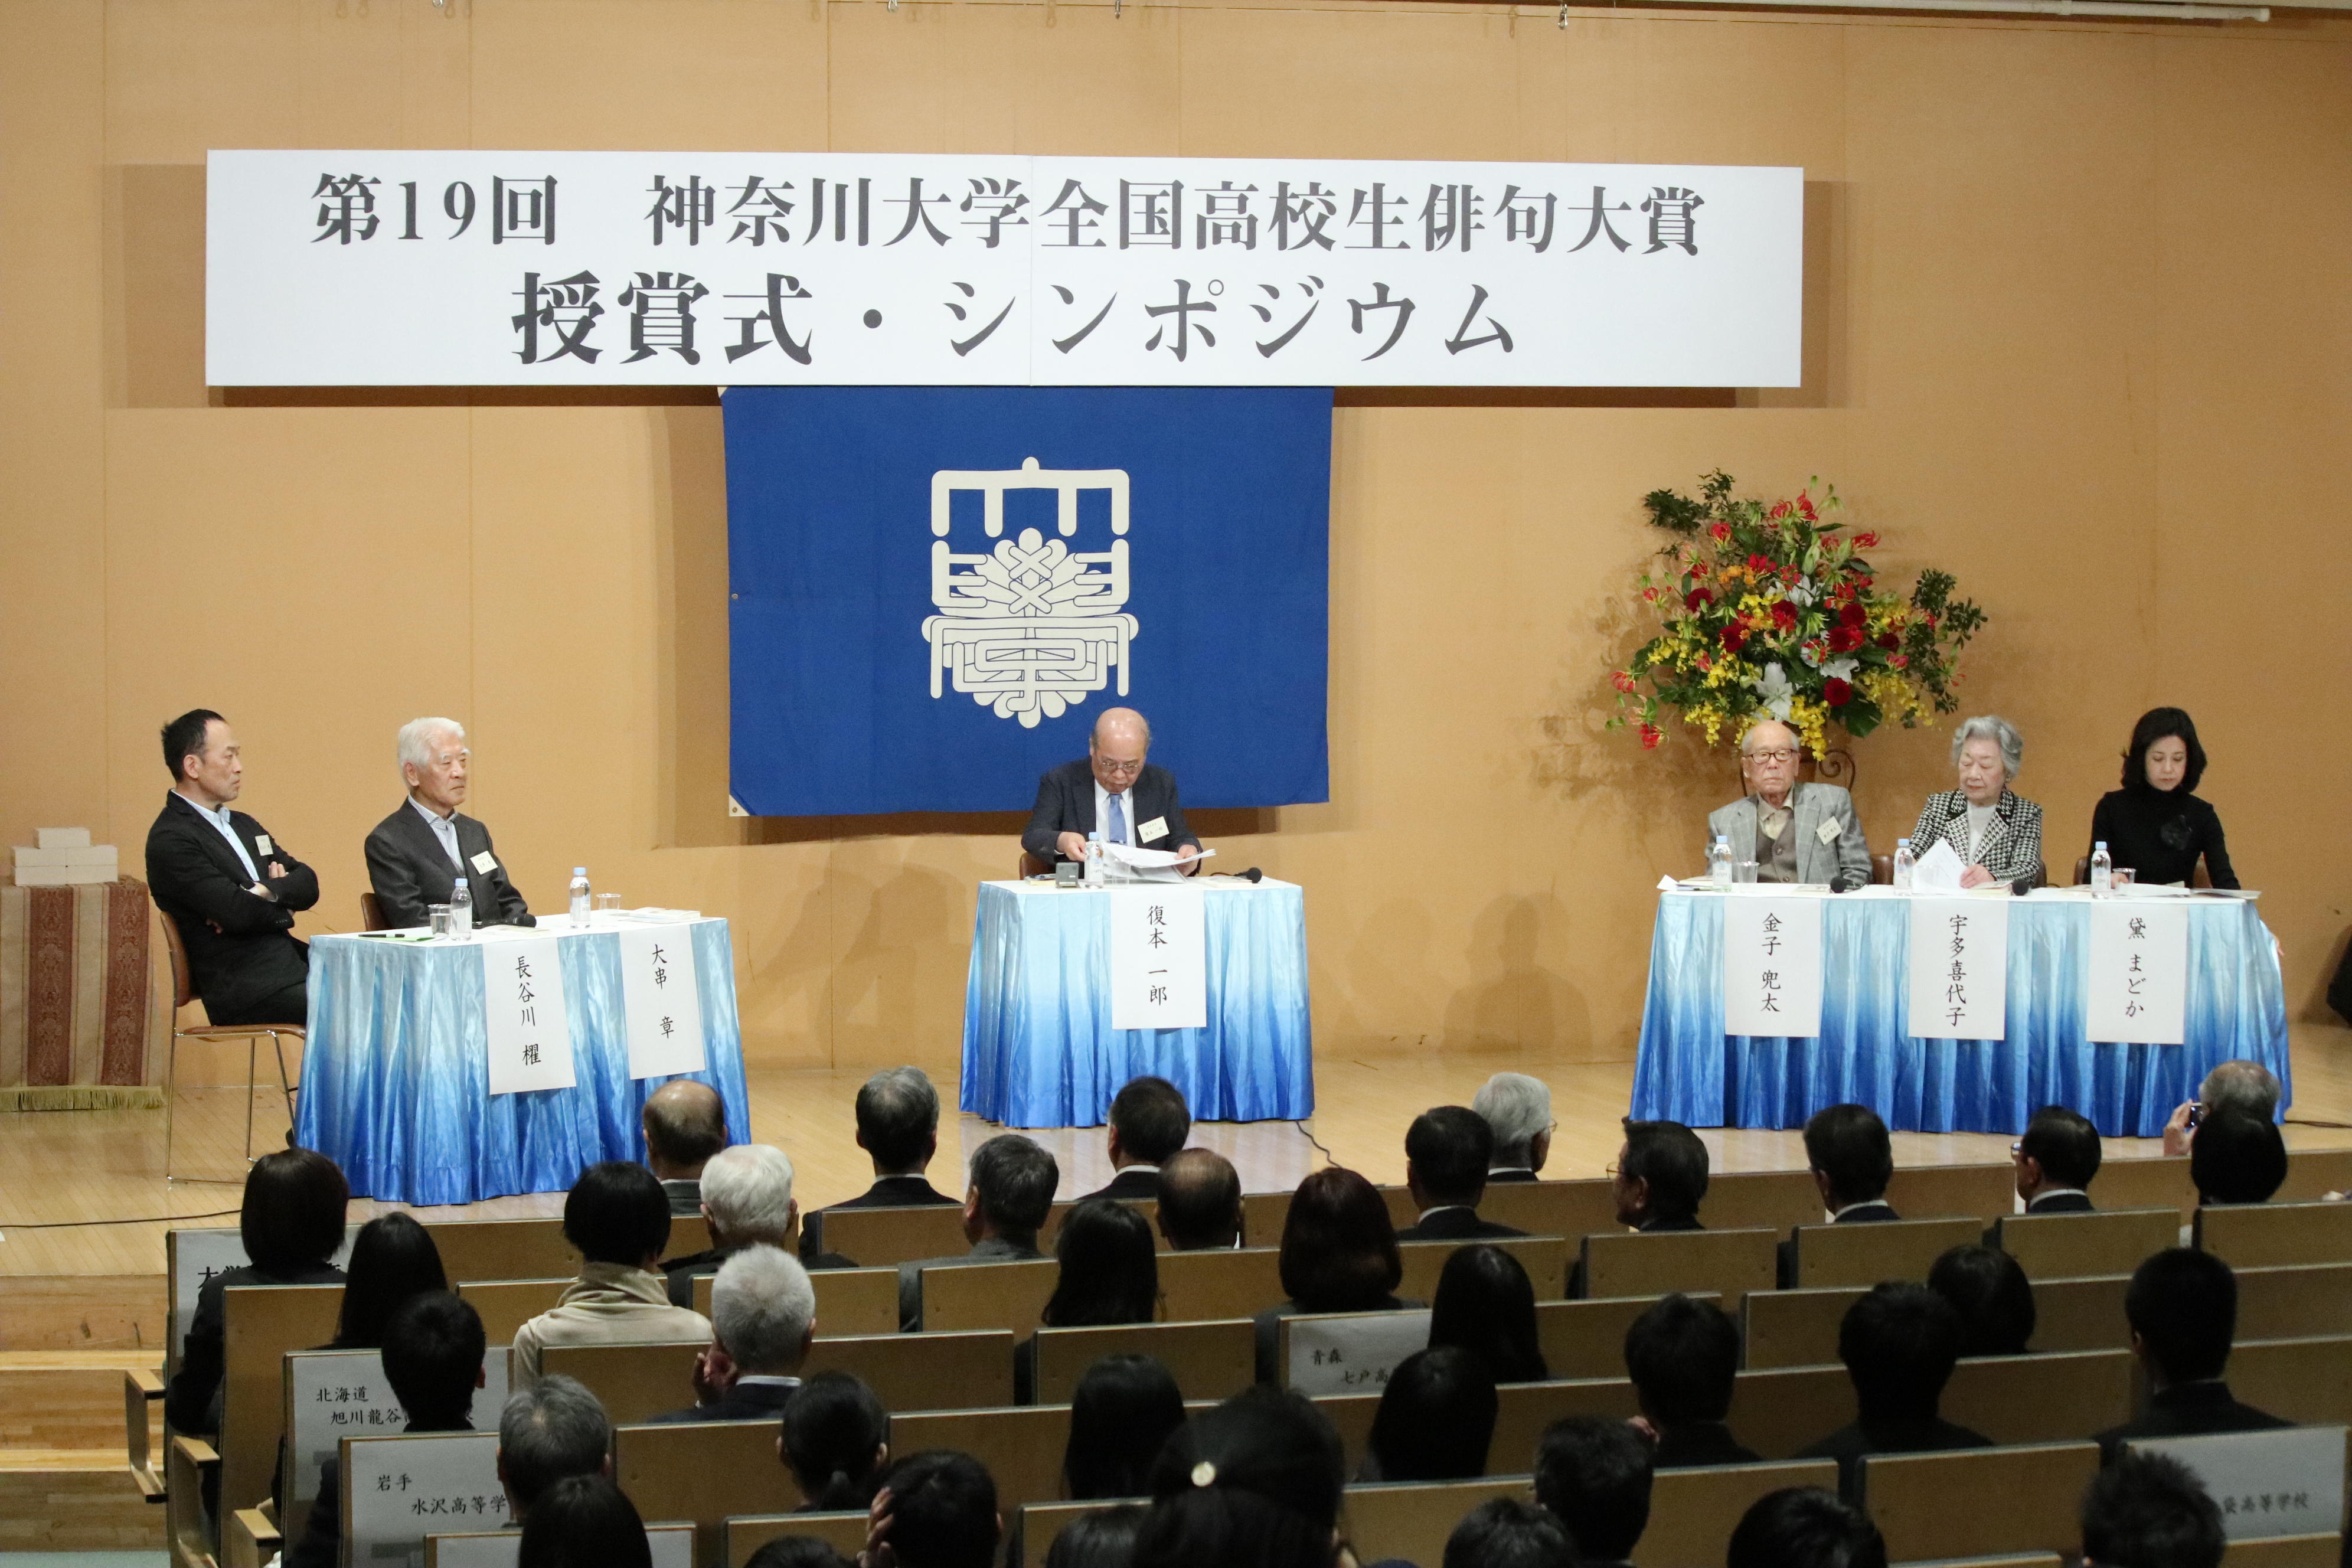 神奈川大学が、著名俳人が高校生俳句の魅力を伝える「第20回神奈川大学全国高校生俳句大賞 シンポジウム・授賞式」を開催